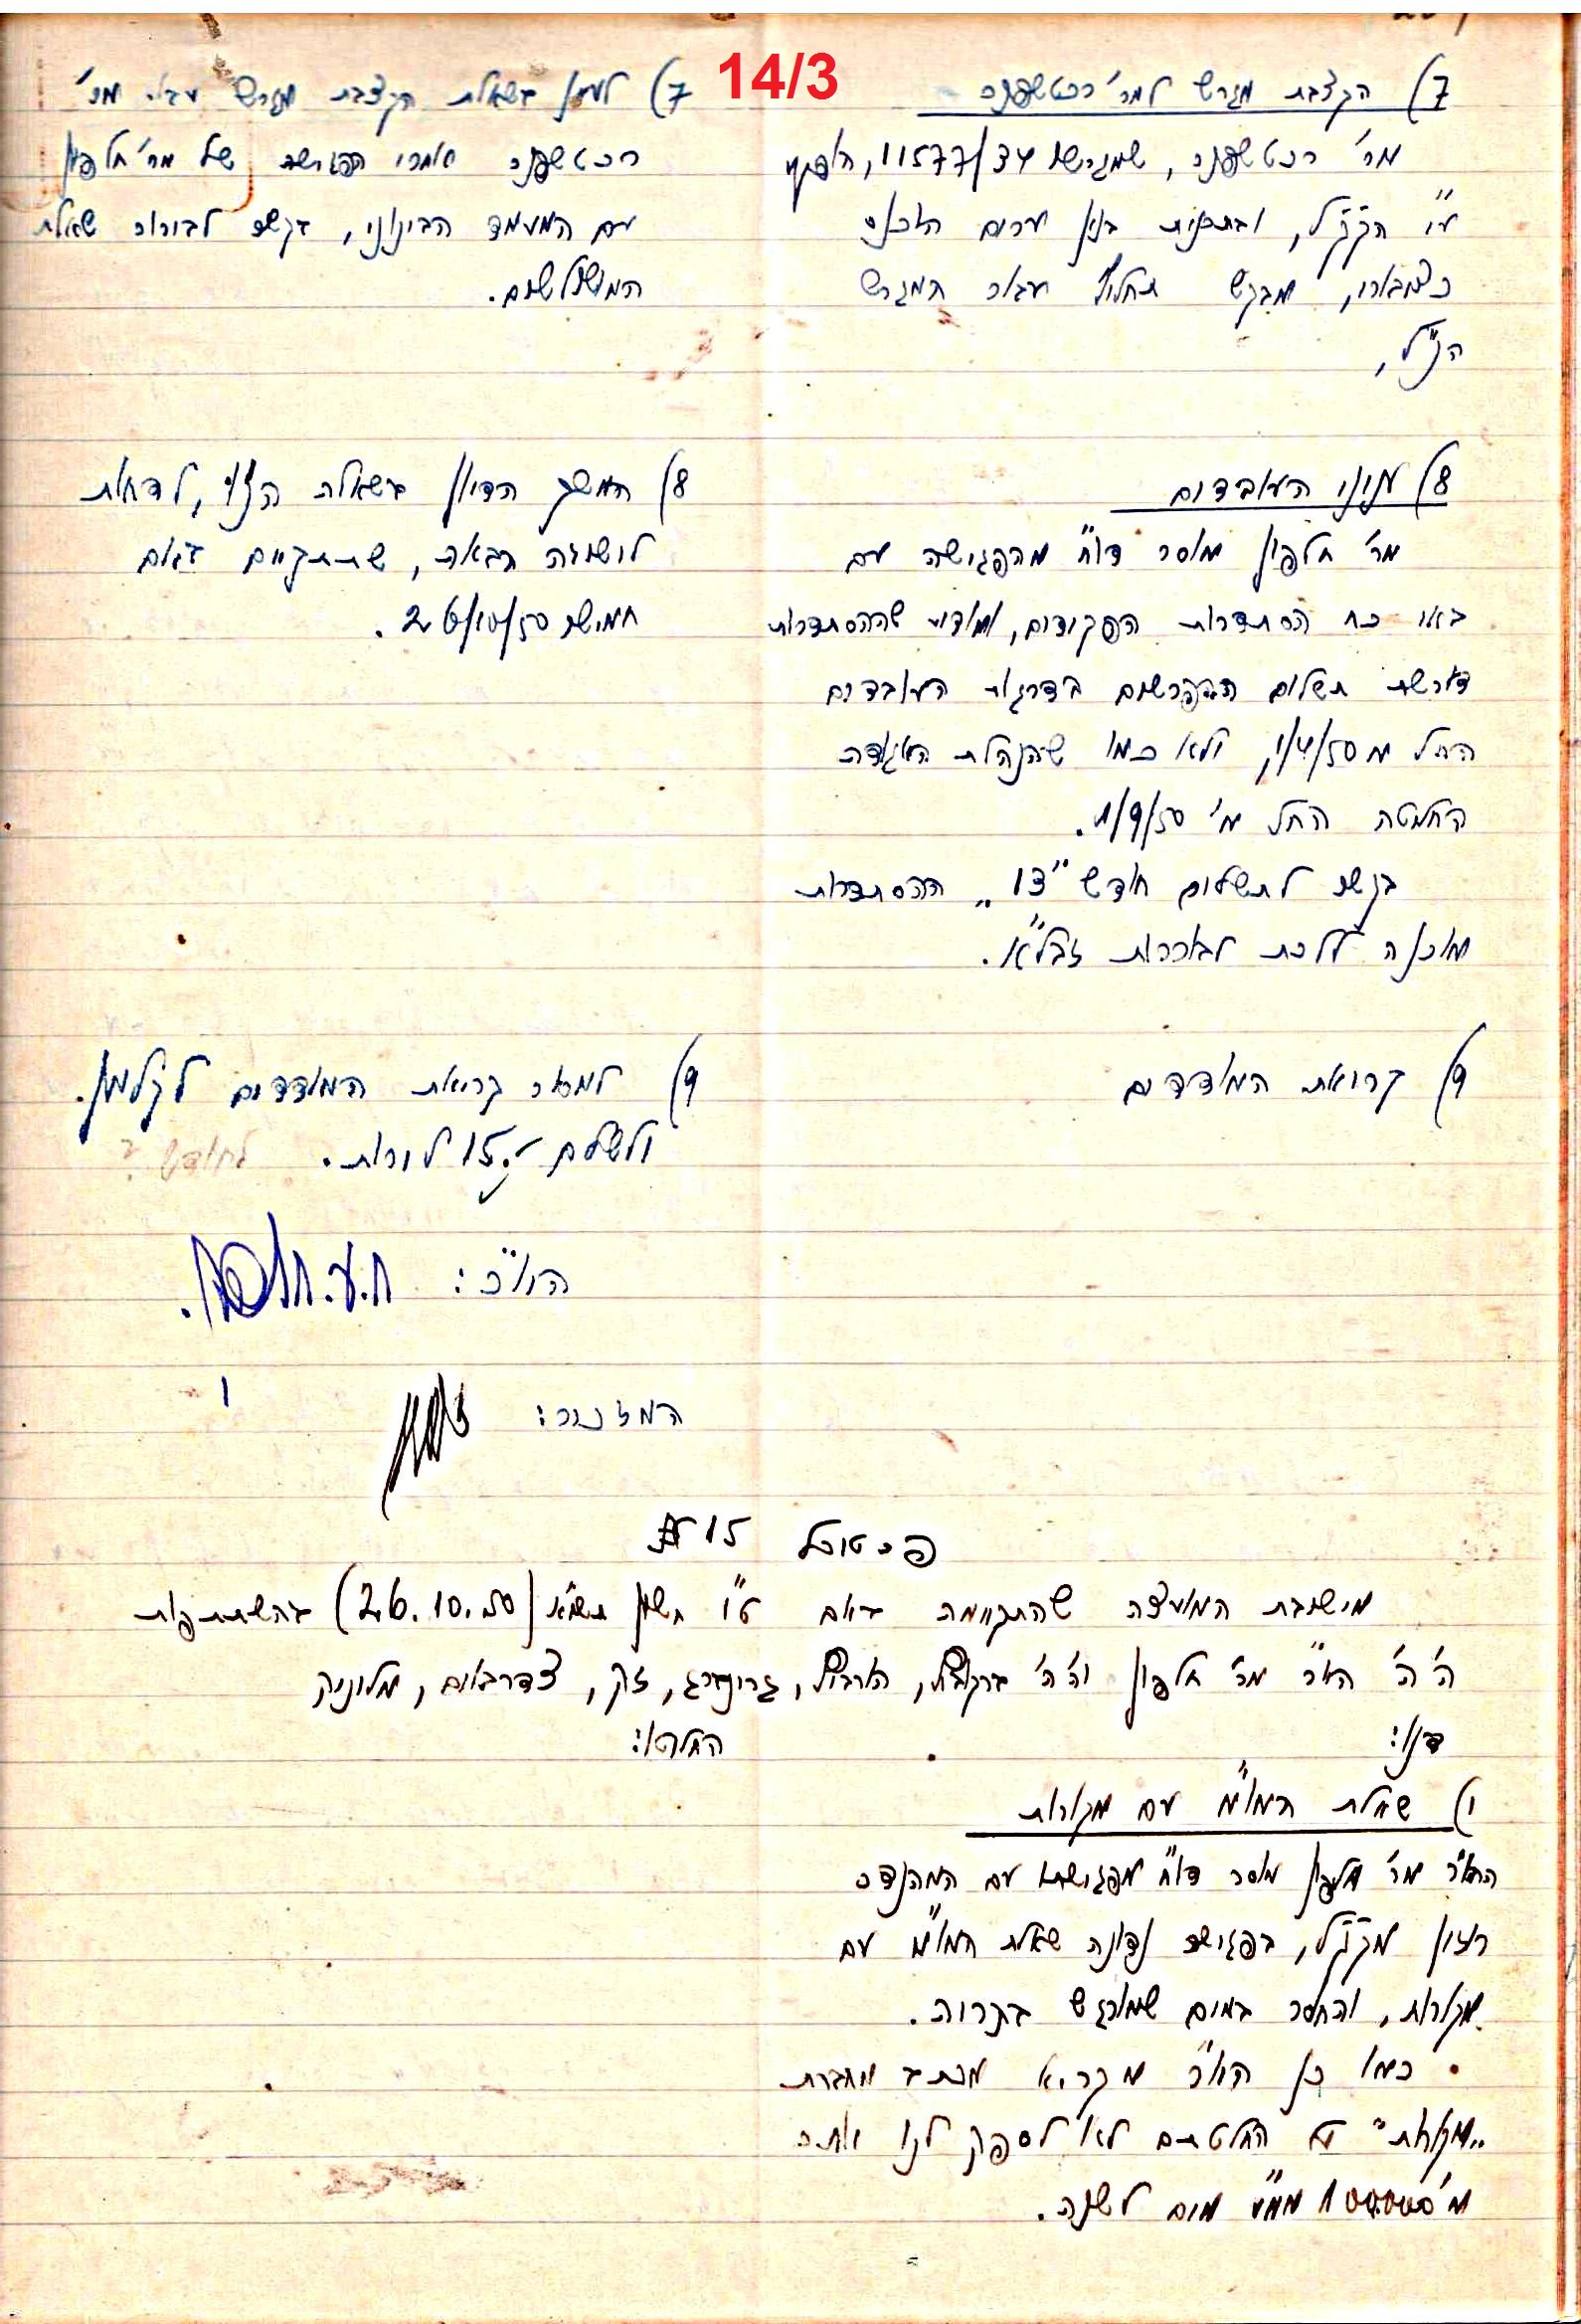 פרוטוקול 47 אגודה שיתופית – מועצה 25.10.54 – 6.2.44 by riki deri - Illustrated by  מוזיאון בית גרושקביץ / כרך 47 - Ourboox.com